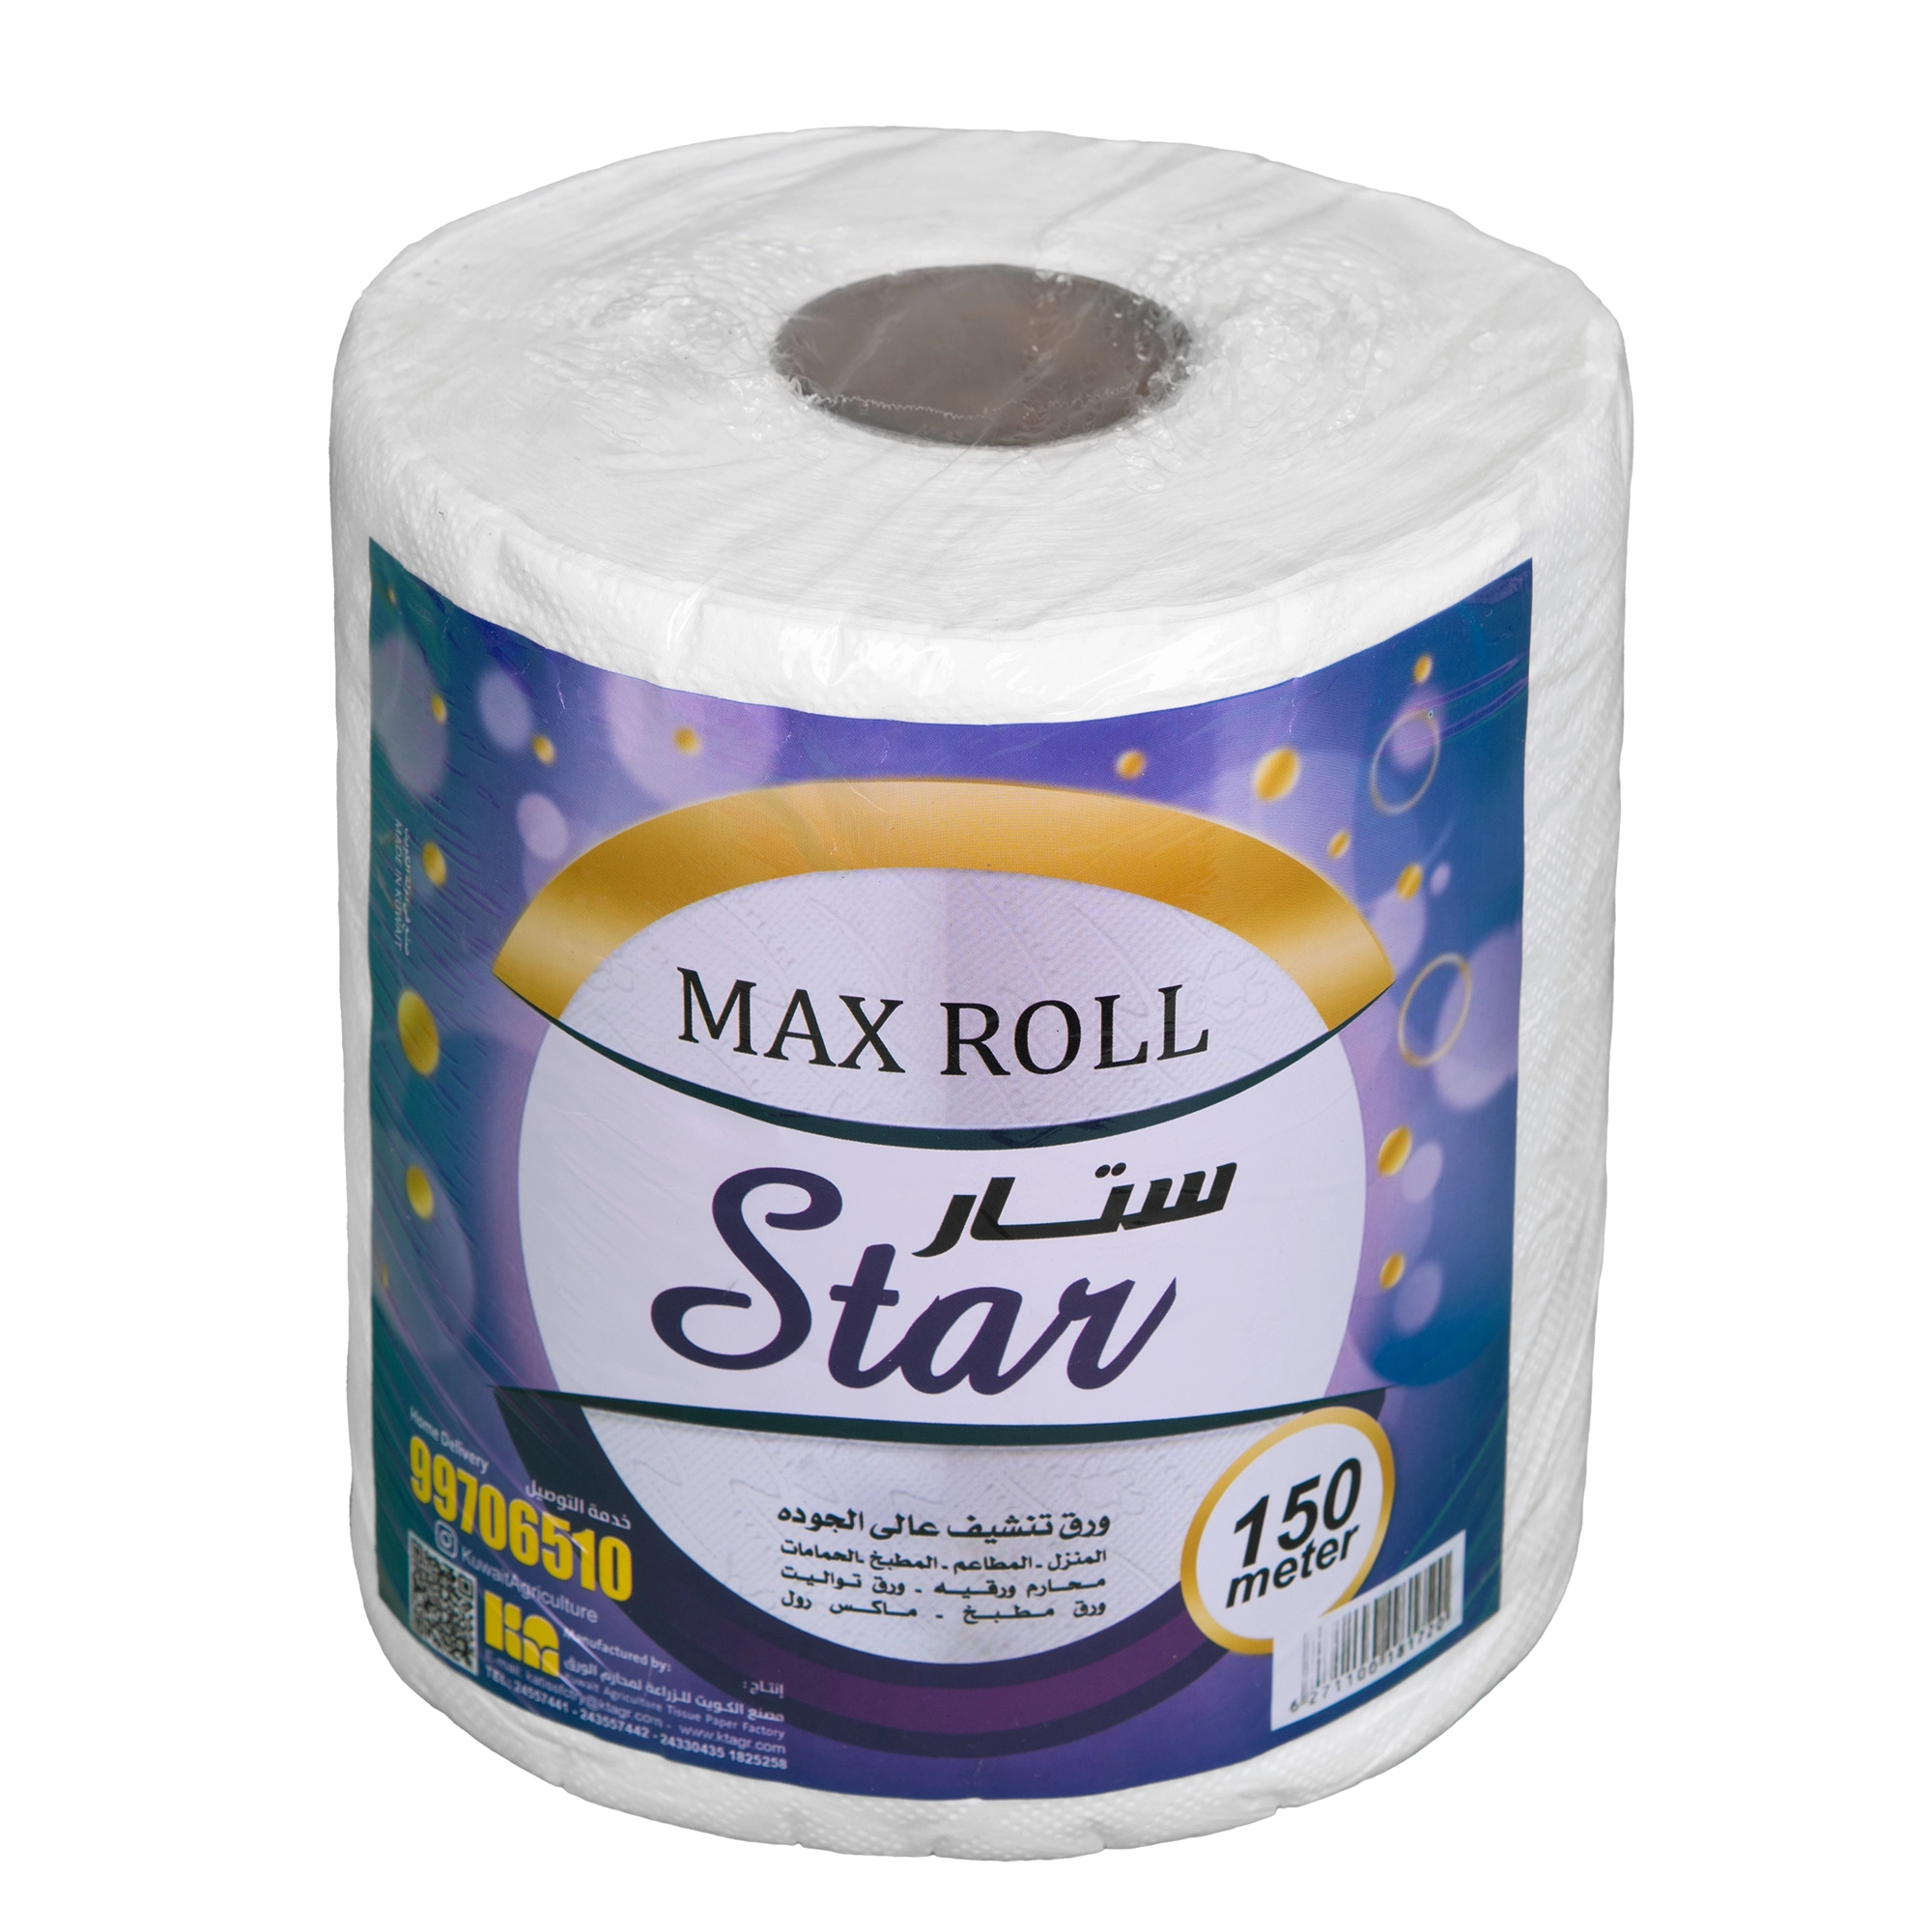 KAC -Star Maxi Roll 150 mtr